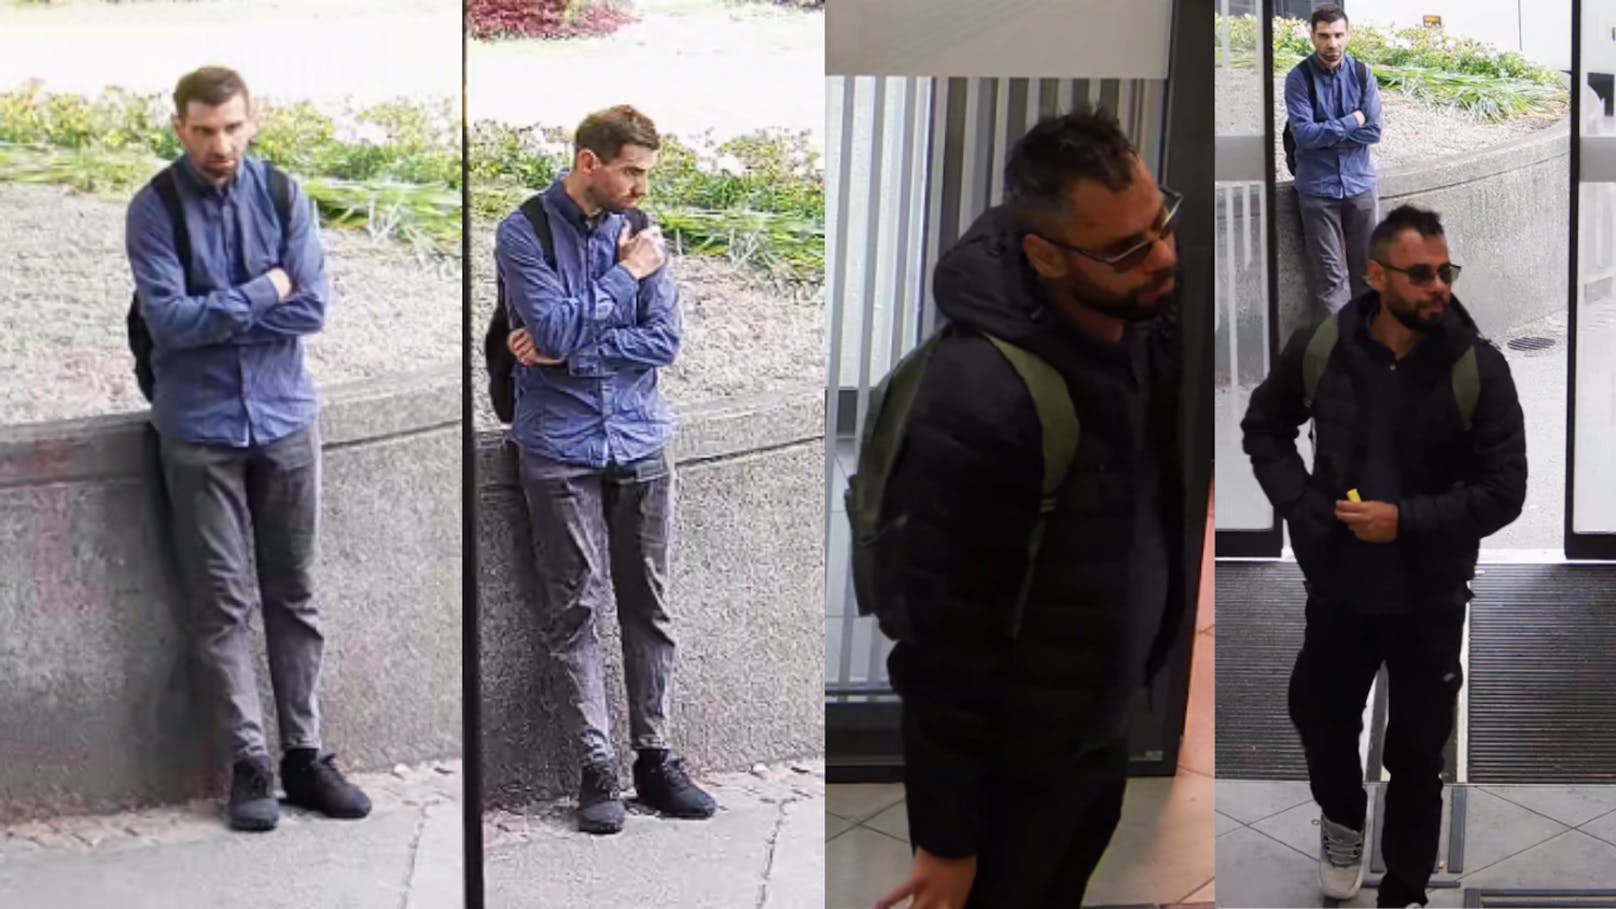 Die Polizei sucht diese Verdächtigen im Zusammenhang mit dem Bankanschlussraub am 21. Mai in der Neustadt in Salzburg.